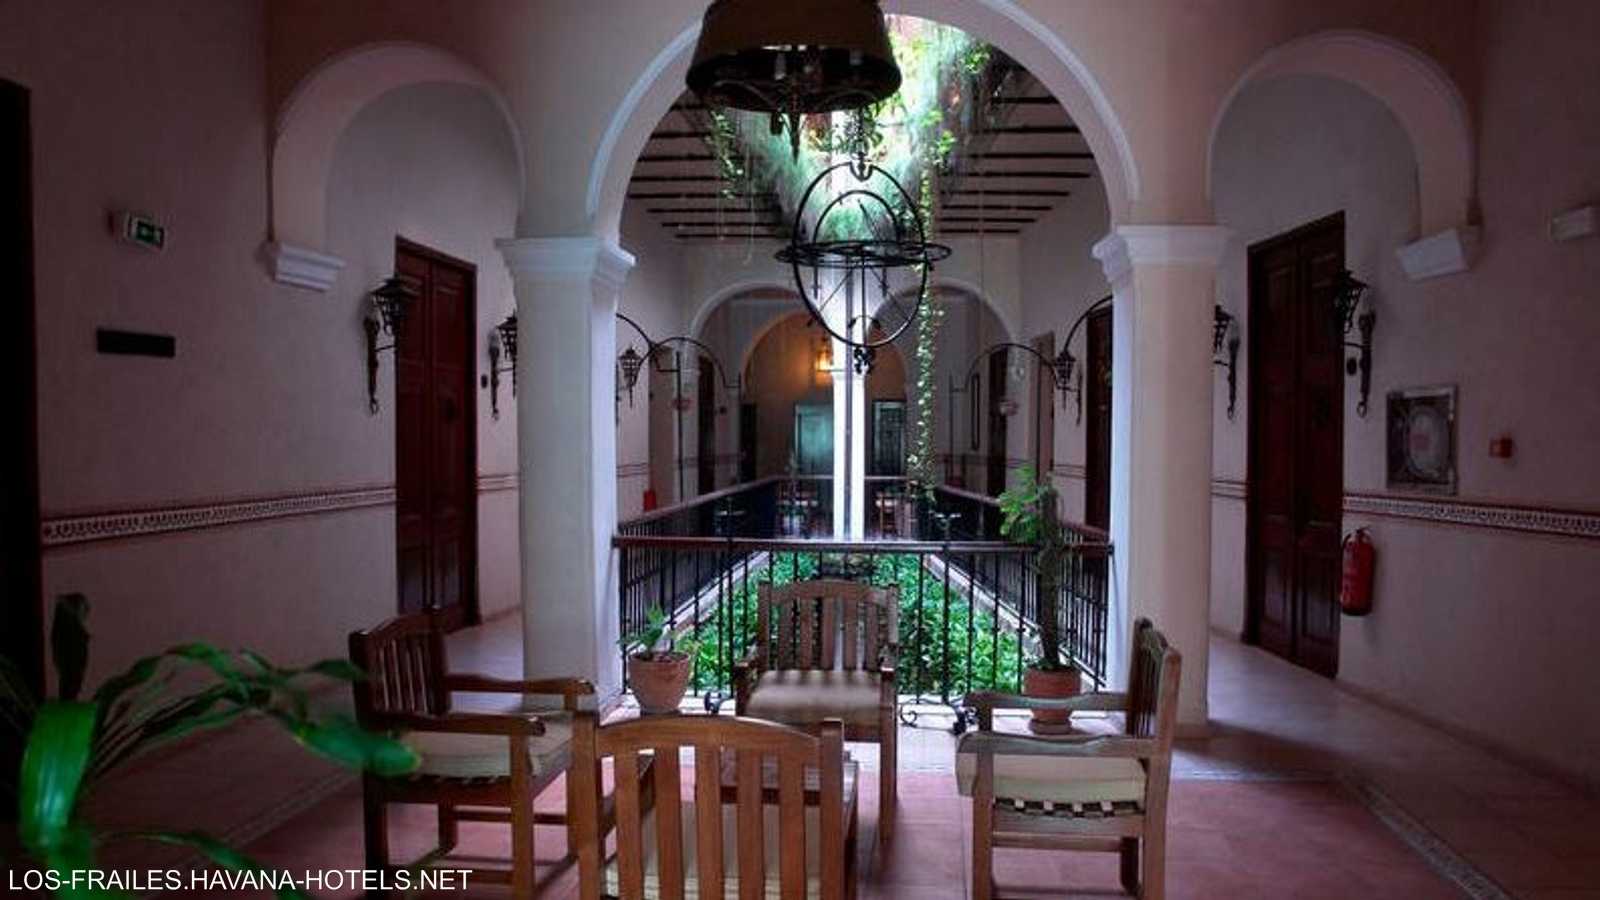 فندق "لوس فرايليس" من أبرز المواقع السياحية في كوبا